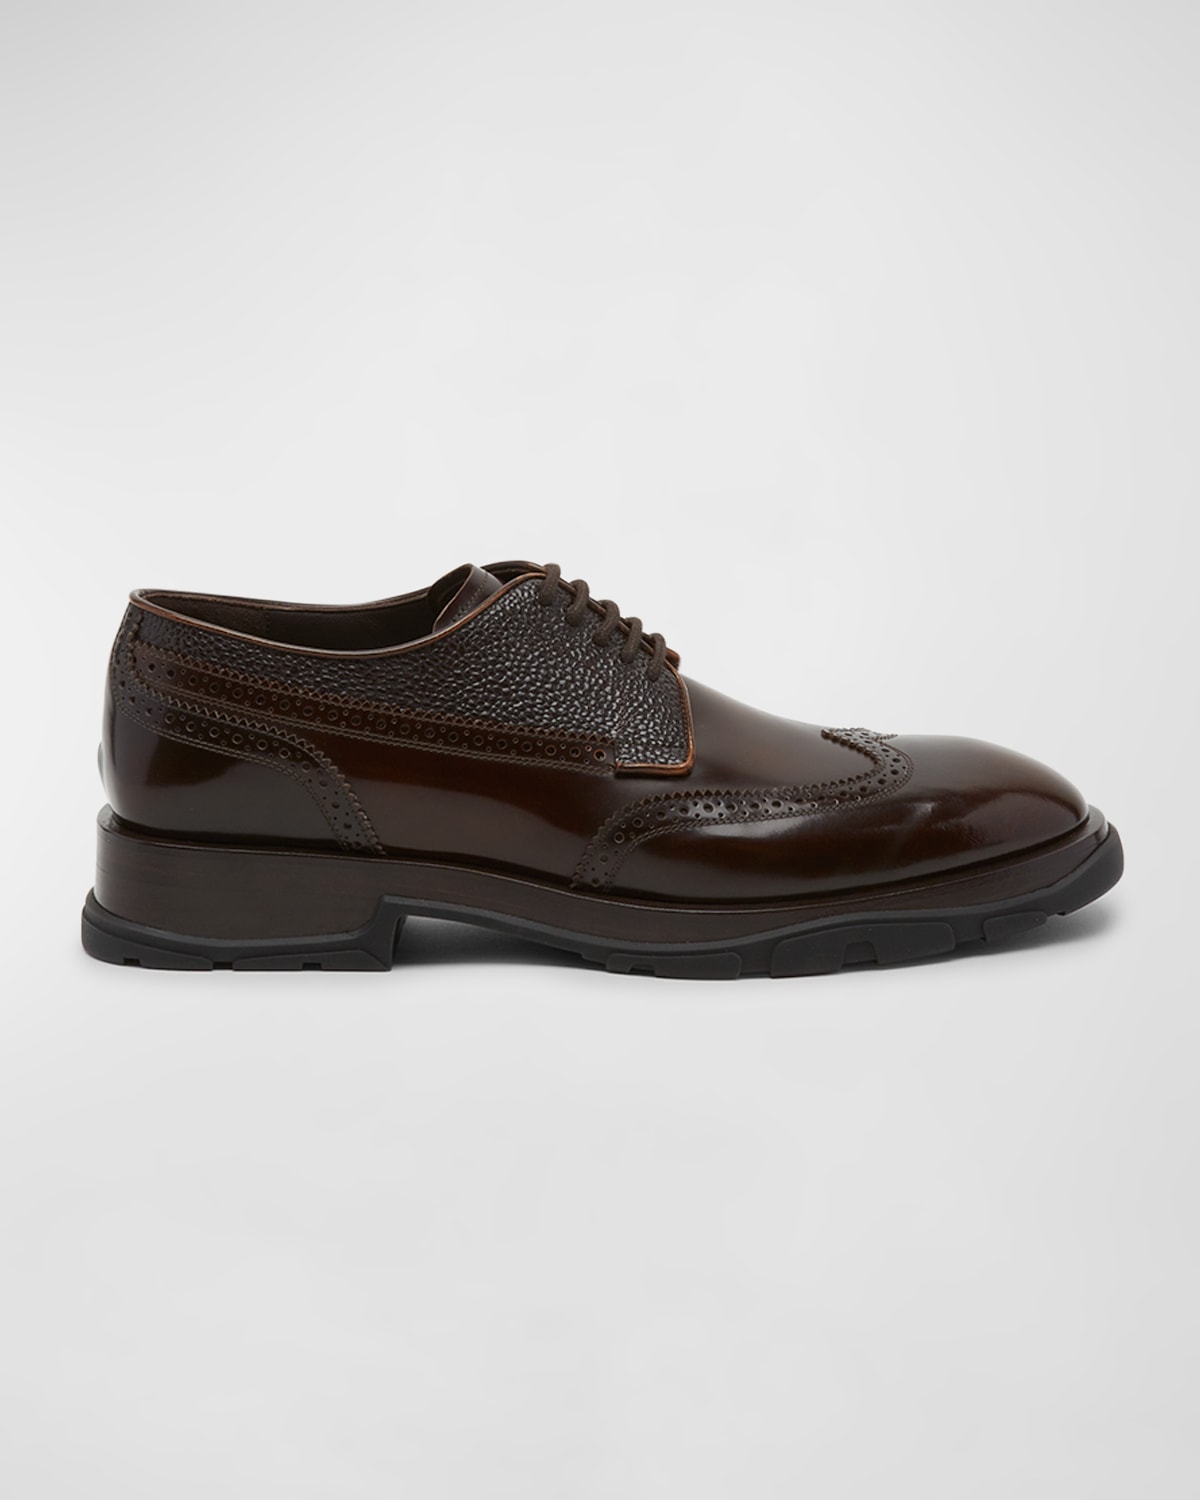 Alexander McQueen Men's Brogue Wingtip Leather Derby Shoes